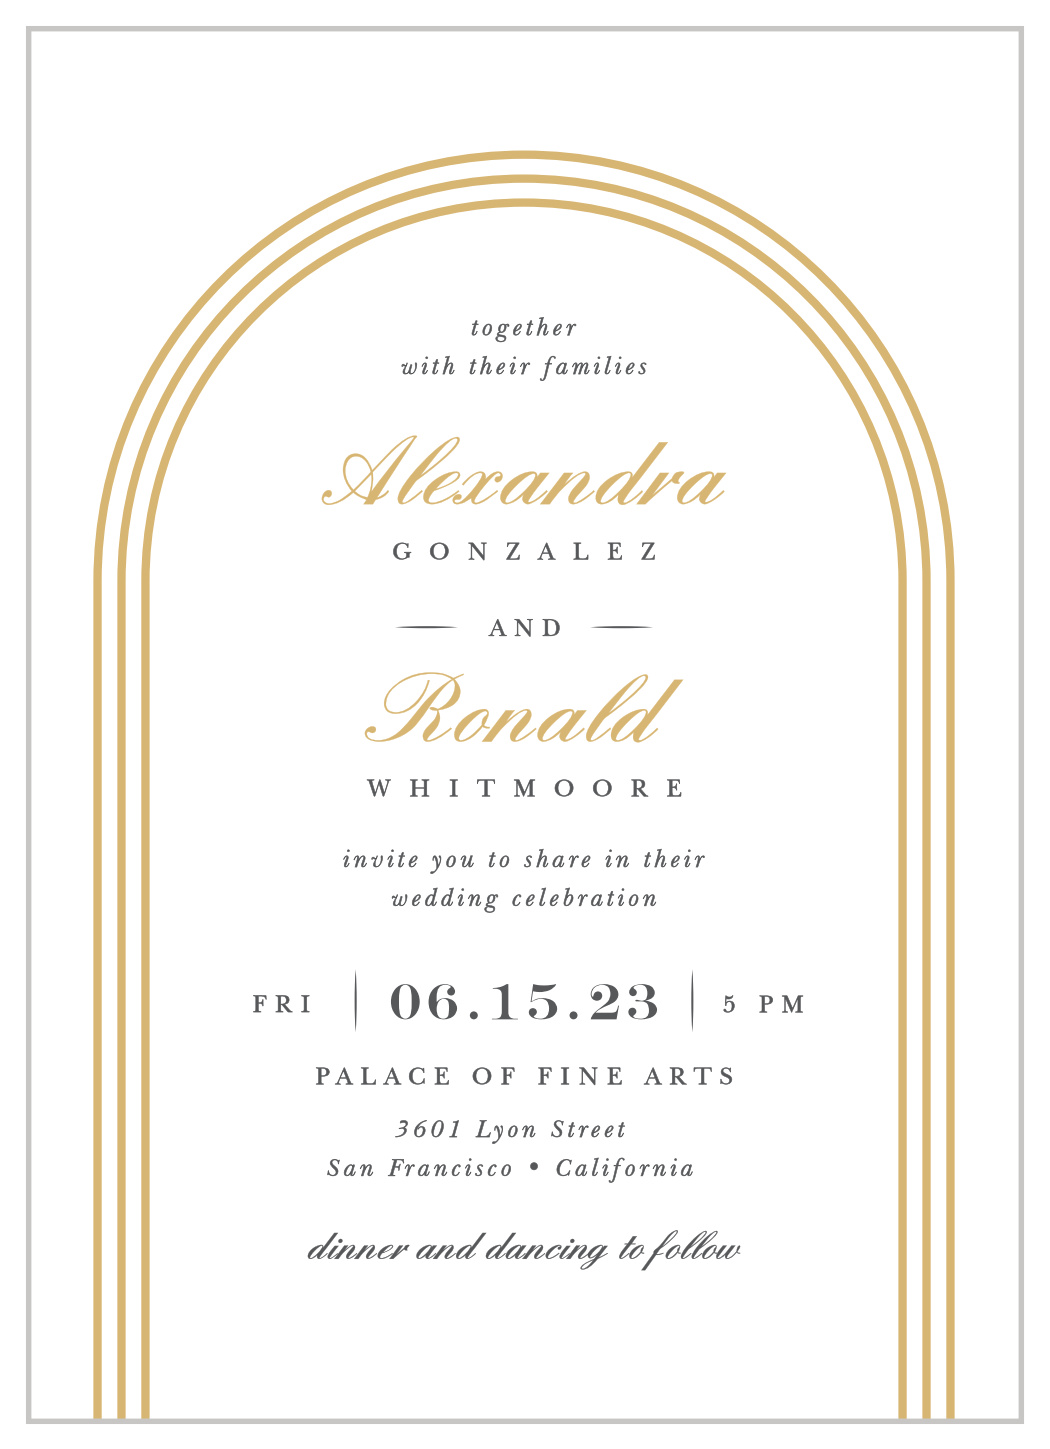 Simple Elegant Wedding Invitations